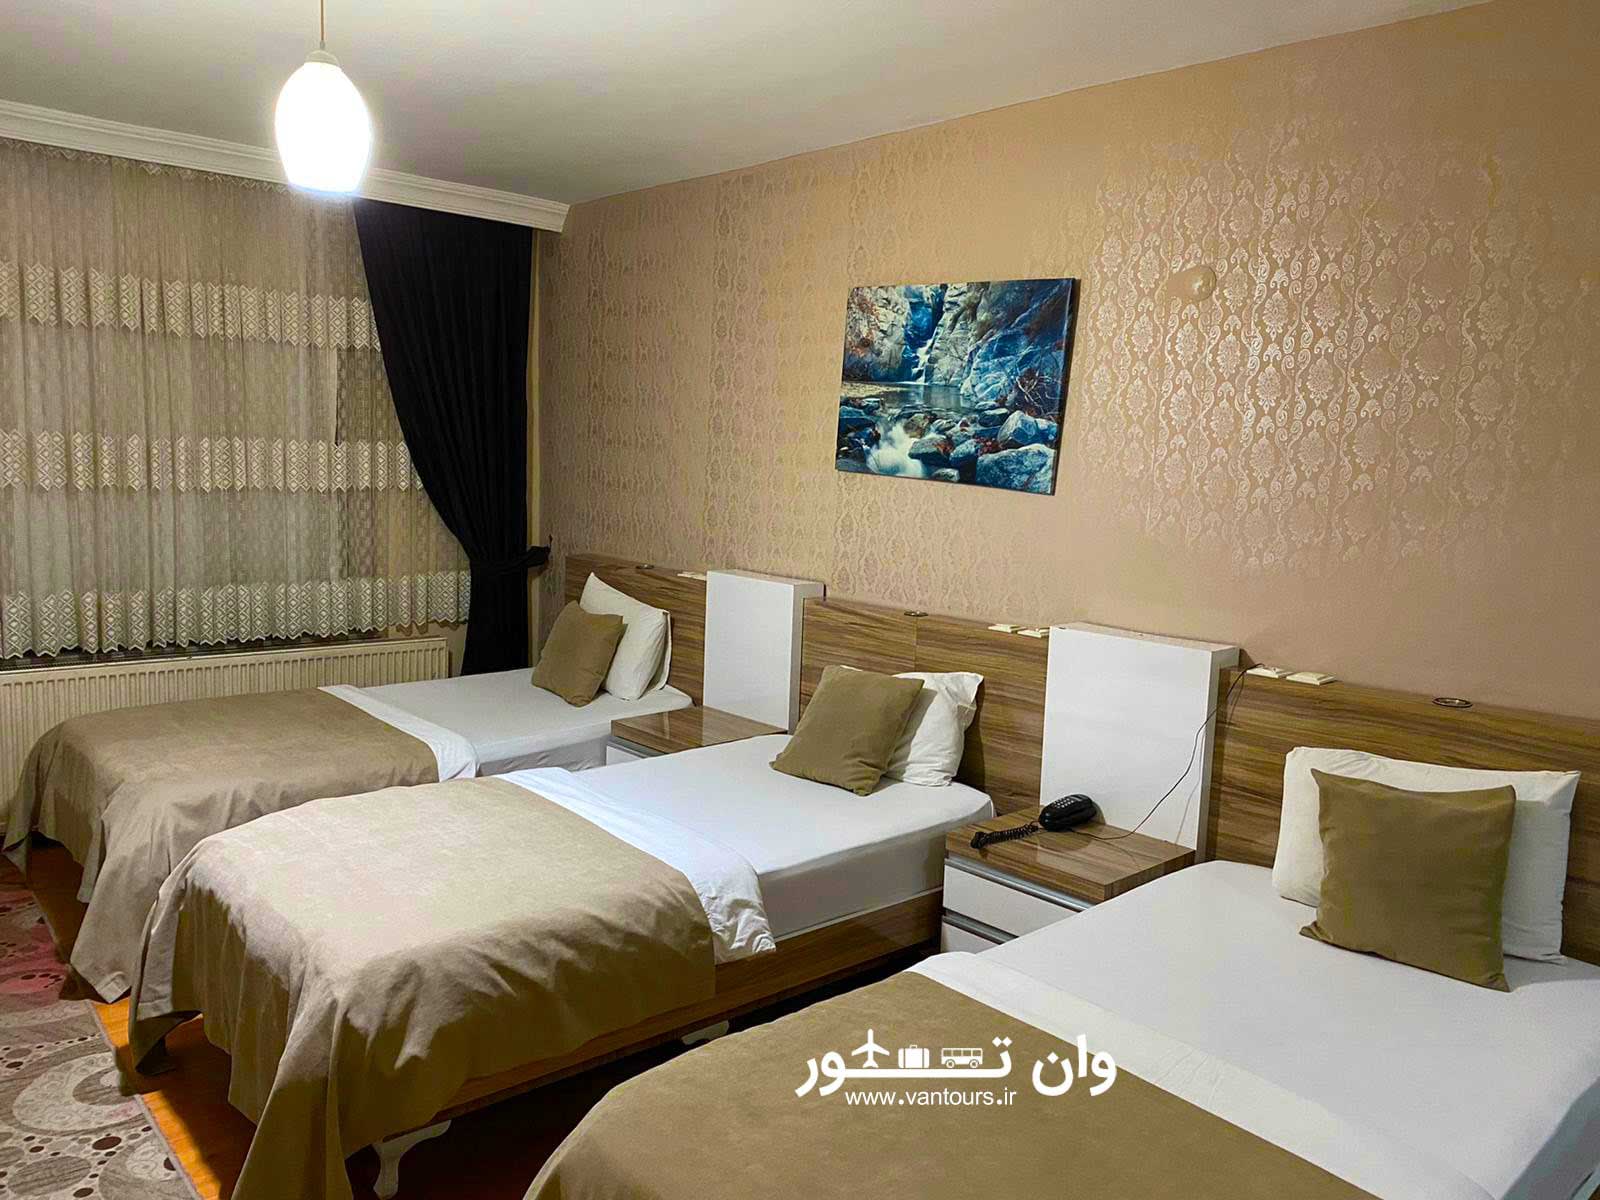 هتل سمیرا در وان ترکیه – samira hotel